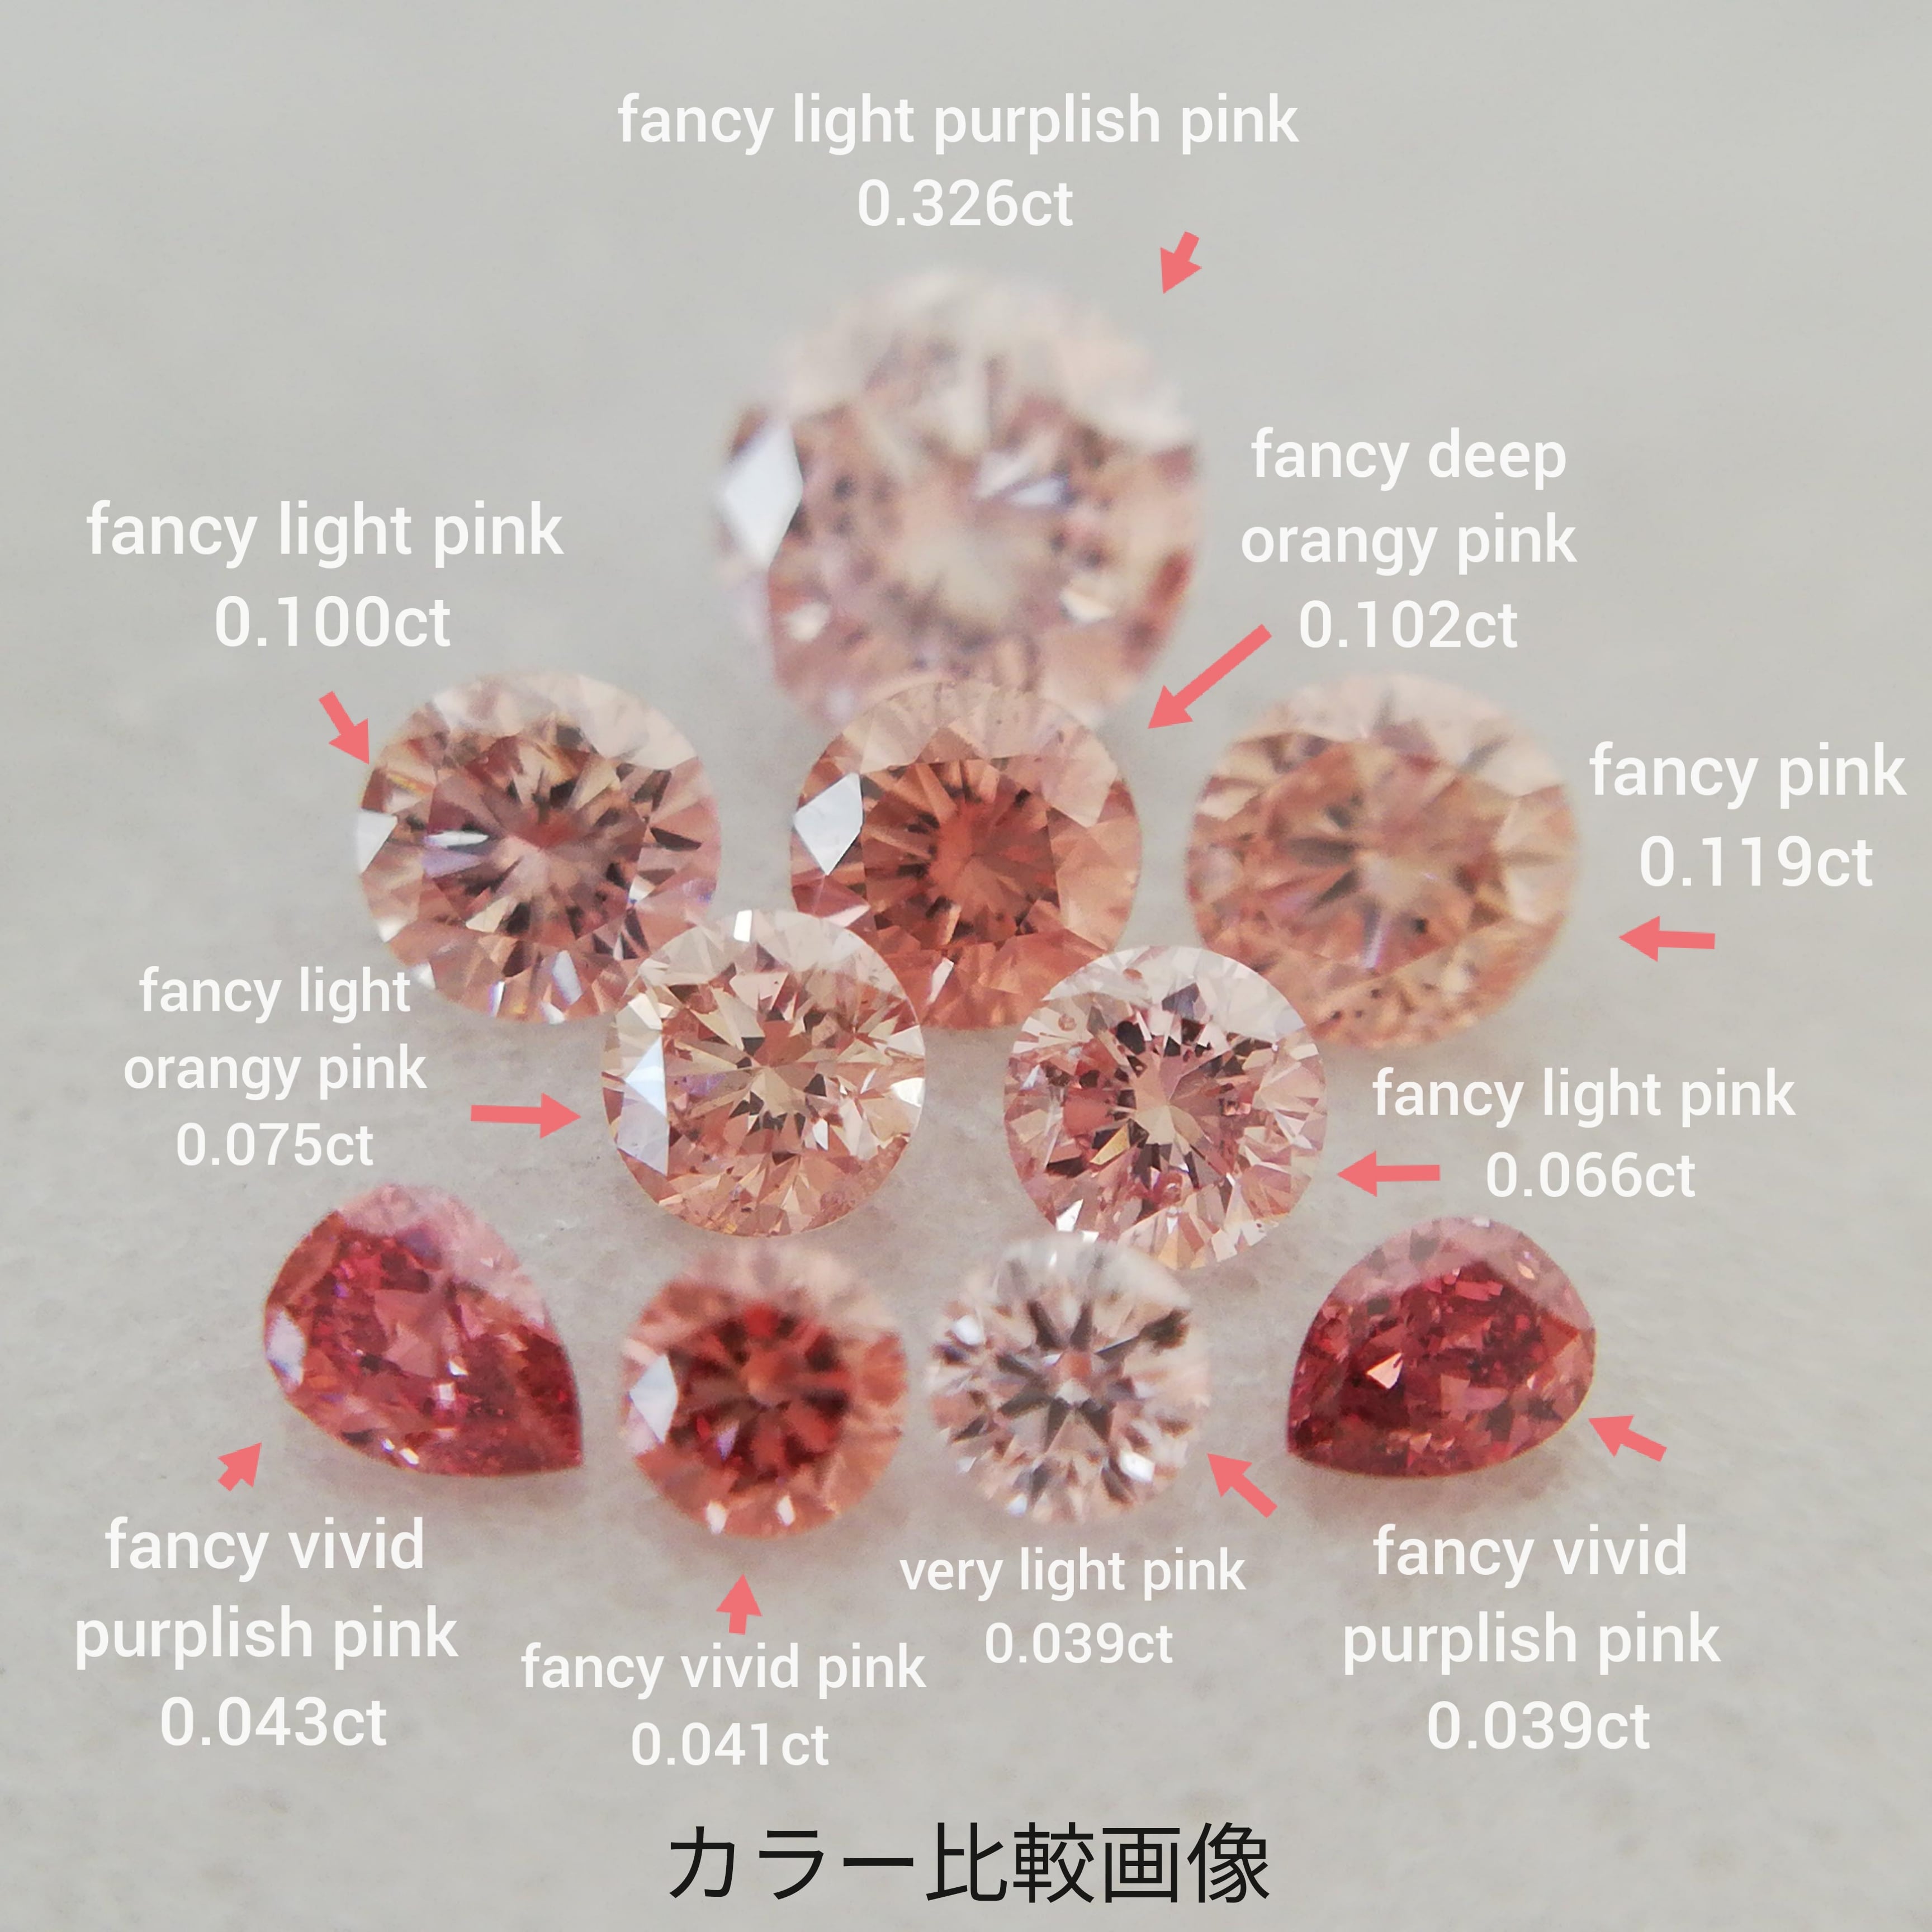 ピンクダイヤモンドルース 0.102ct fancy deep orangy pink SI2(CGL